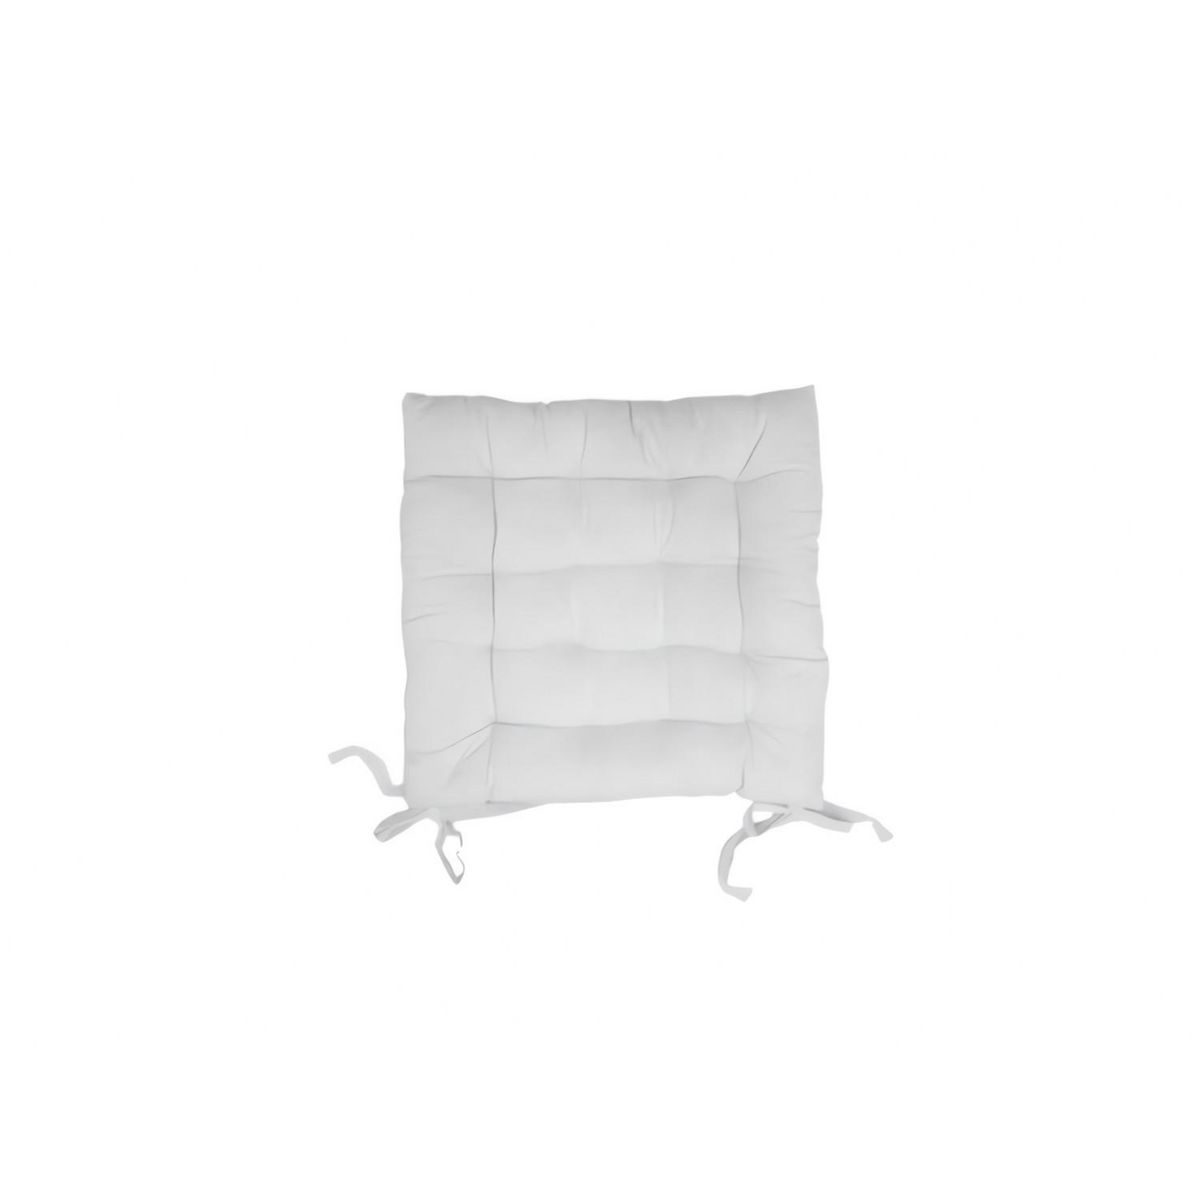 Soleil d'ocre Dessus de chaise capitonné en coton 40x40x5 cm PANAMA blanc, par Soleil d'Ocre